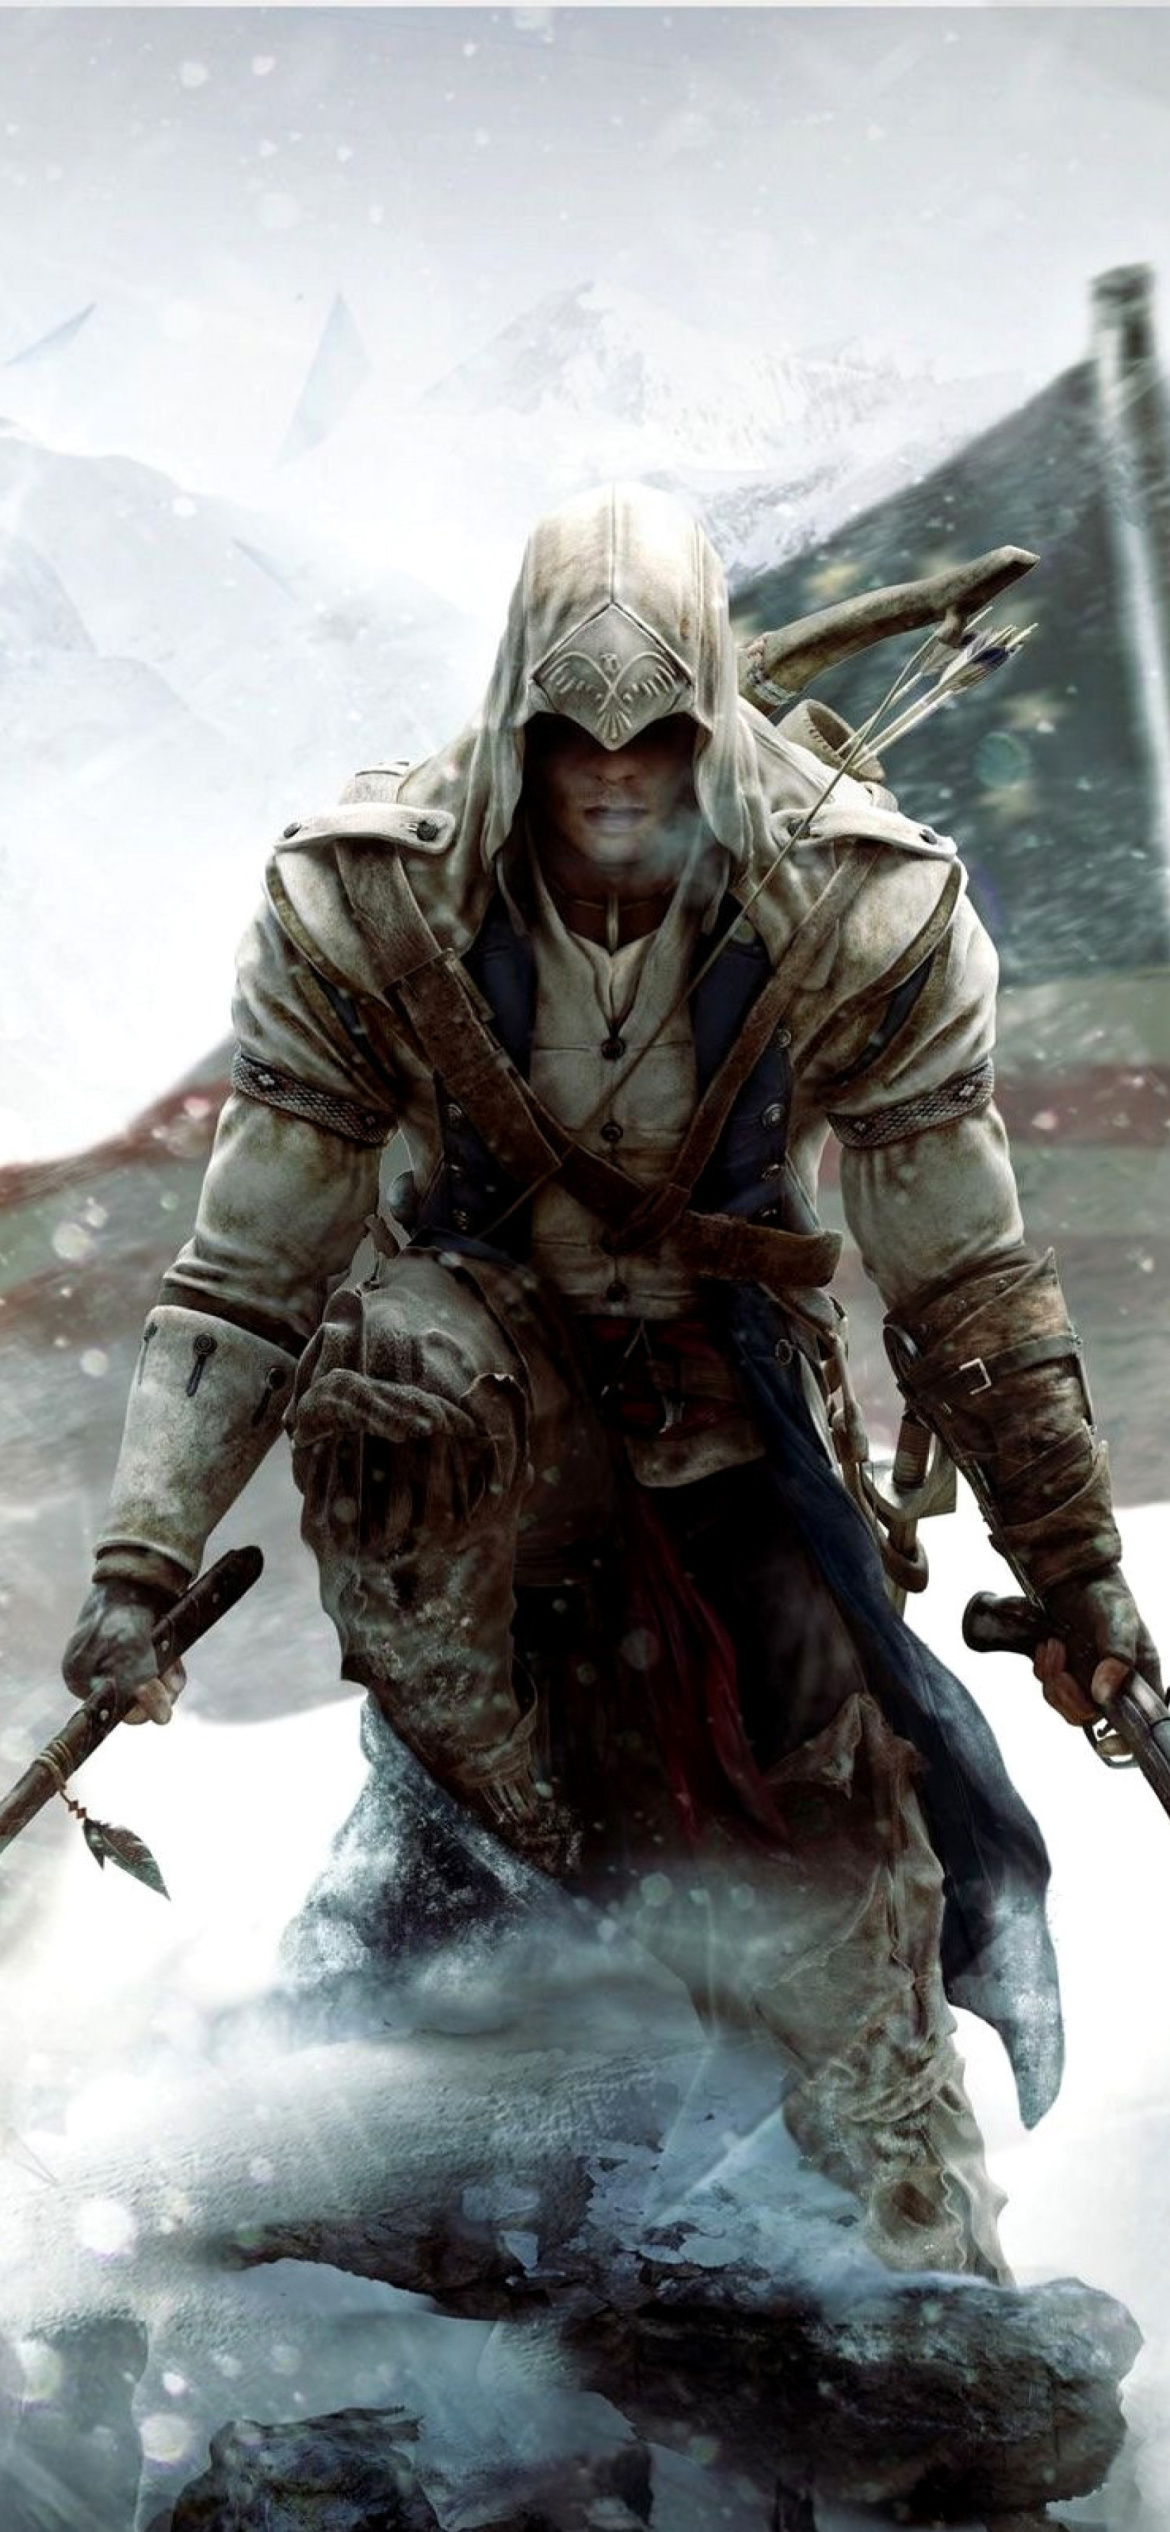 Fondo de pantalla Assassins Creed III 1170x2532